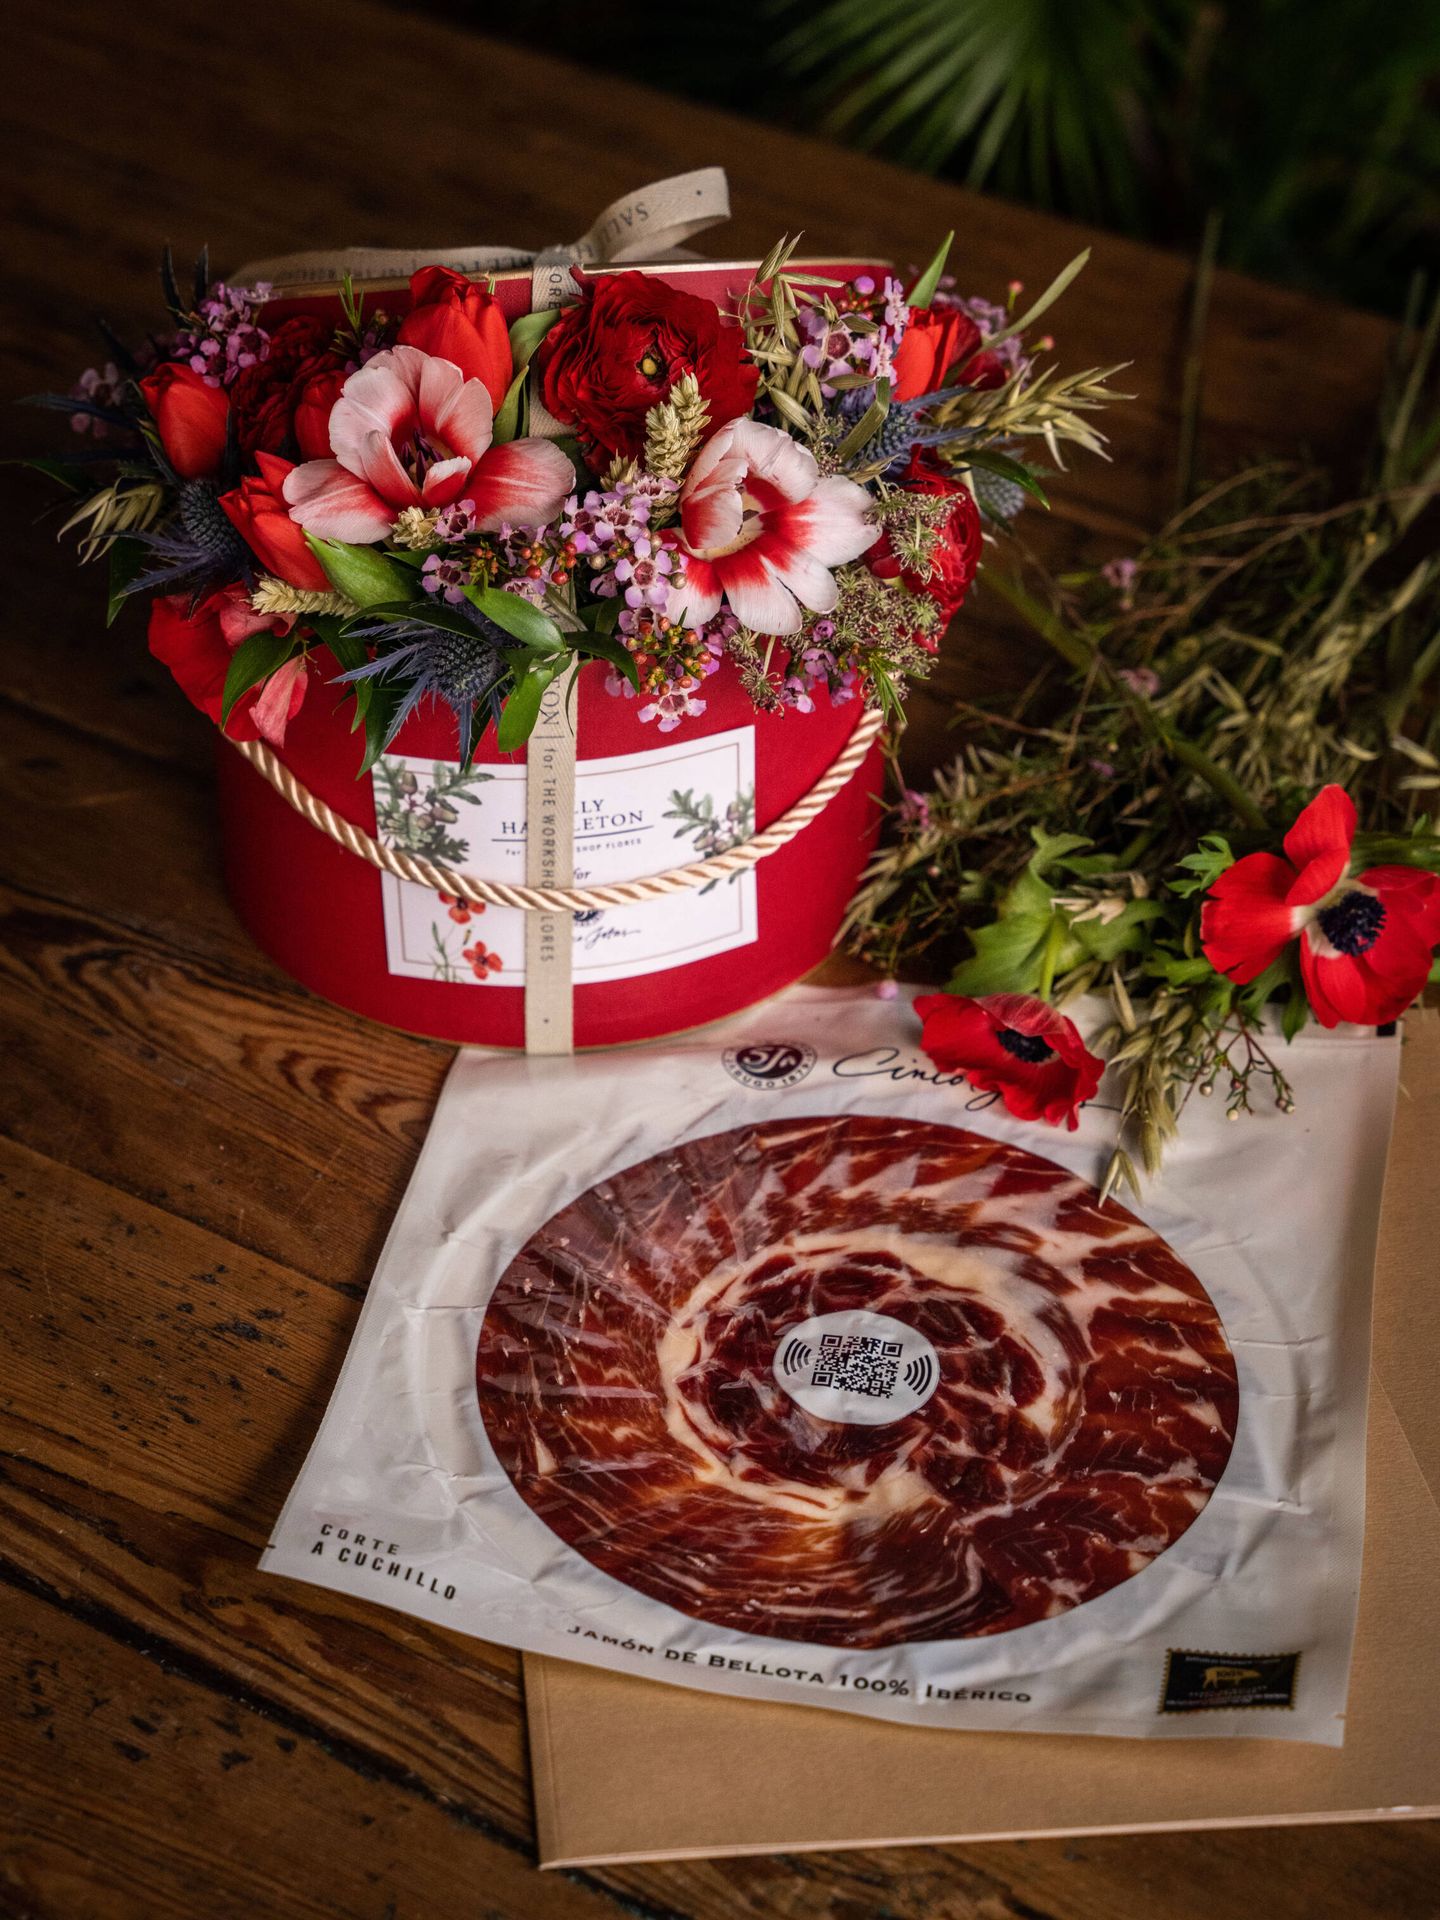 Pack edición limitada San Valentín de jamón de bellota 100% ibérico Cinco Jotas y flores de Sally Hambleton entre 95 y 185 euros. (Cortesía)